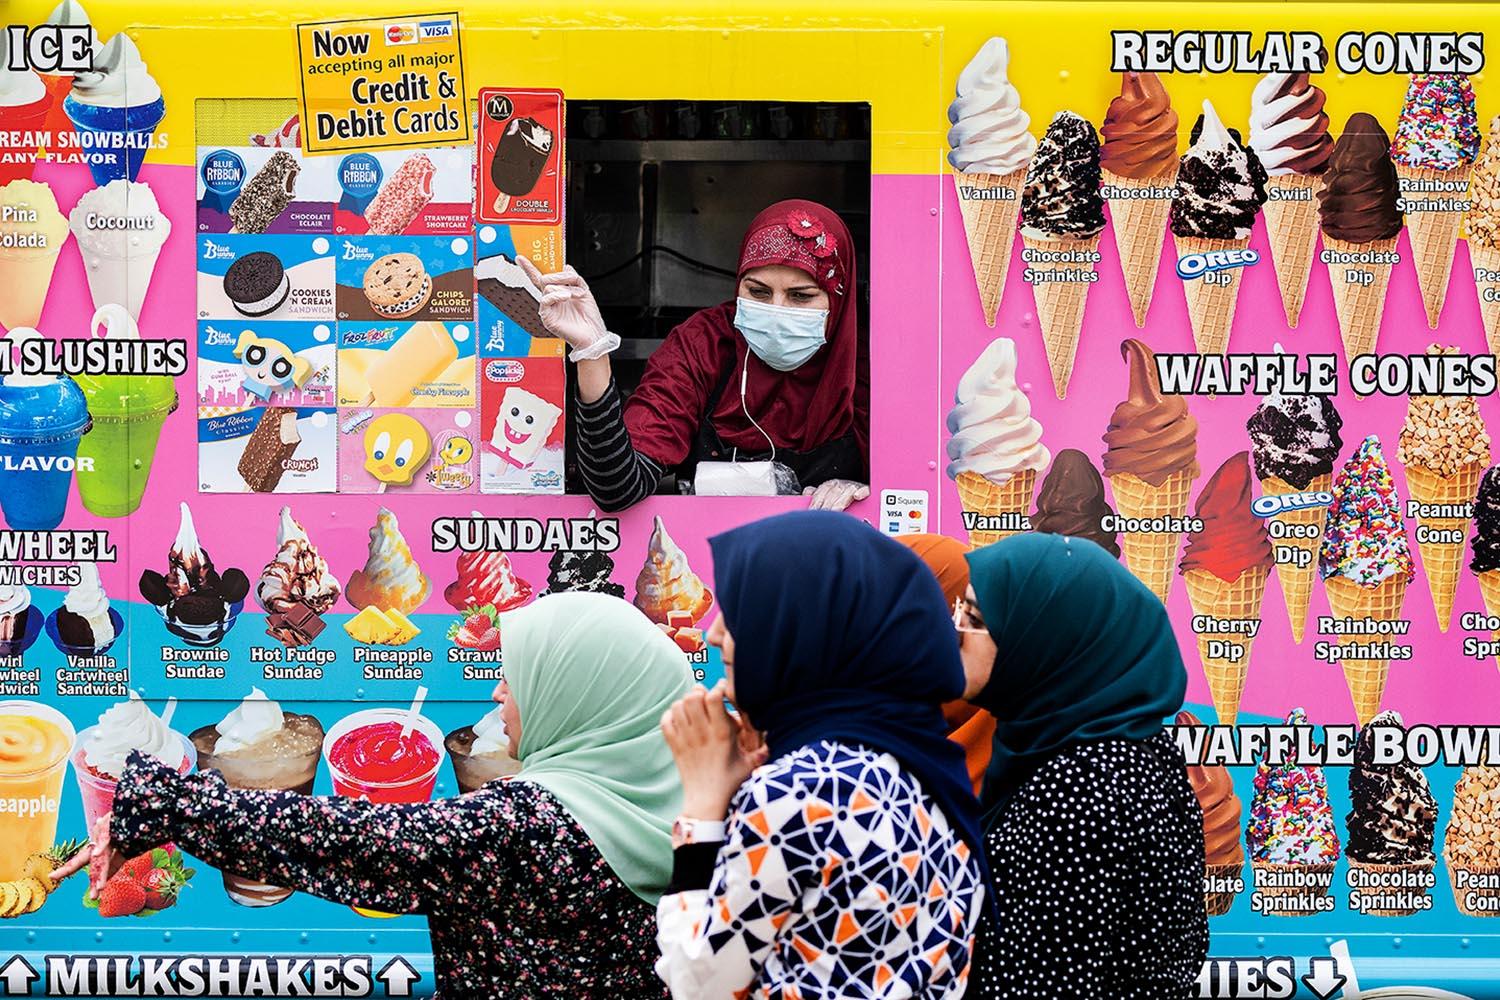 gaza-using-ice-cream-trucks-store-bodies-SPACEBAR-Hero.jpg